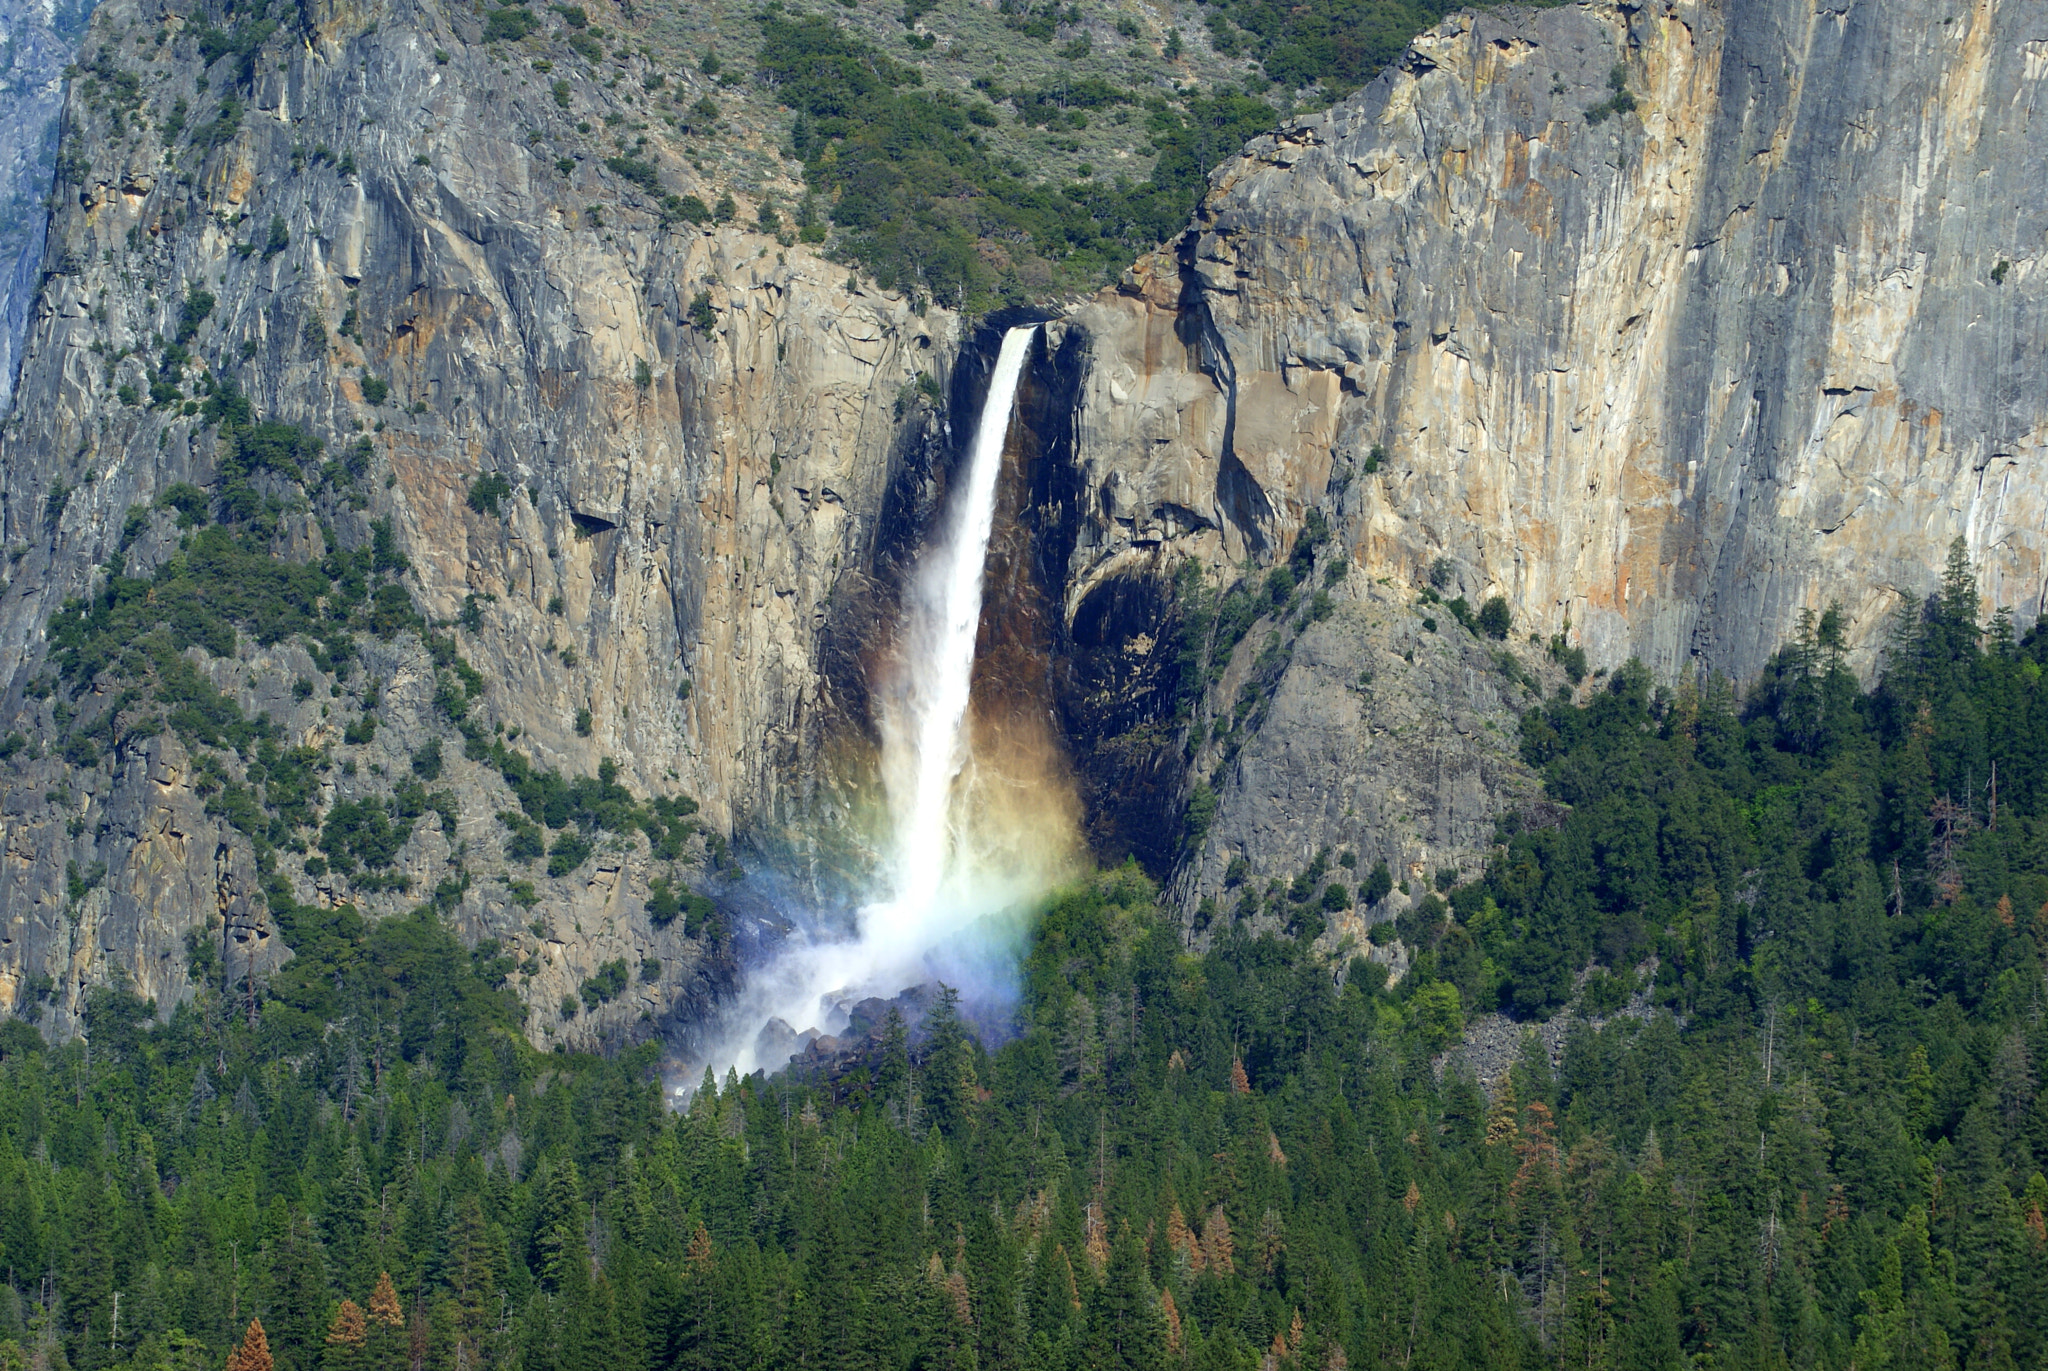 Sony Alpha DSLR-A300 sample photo. Yosemite photography